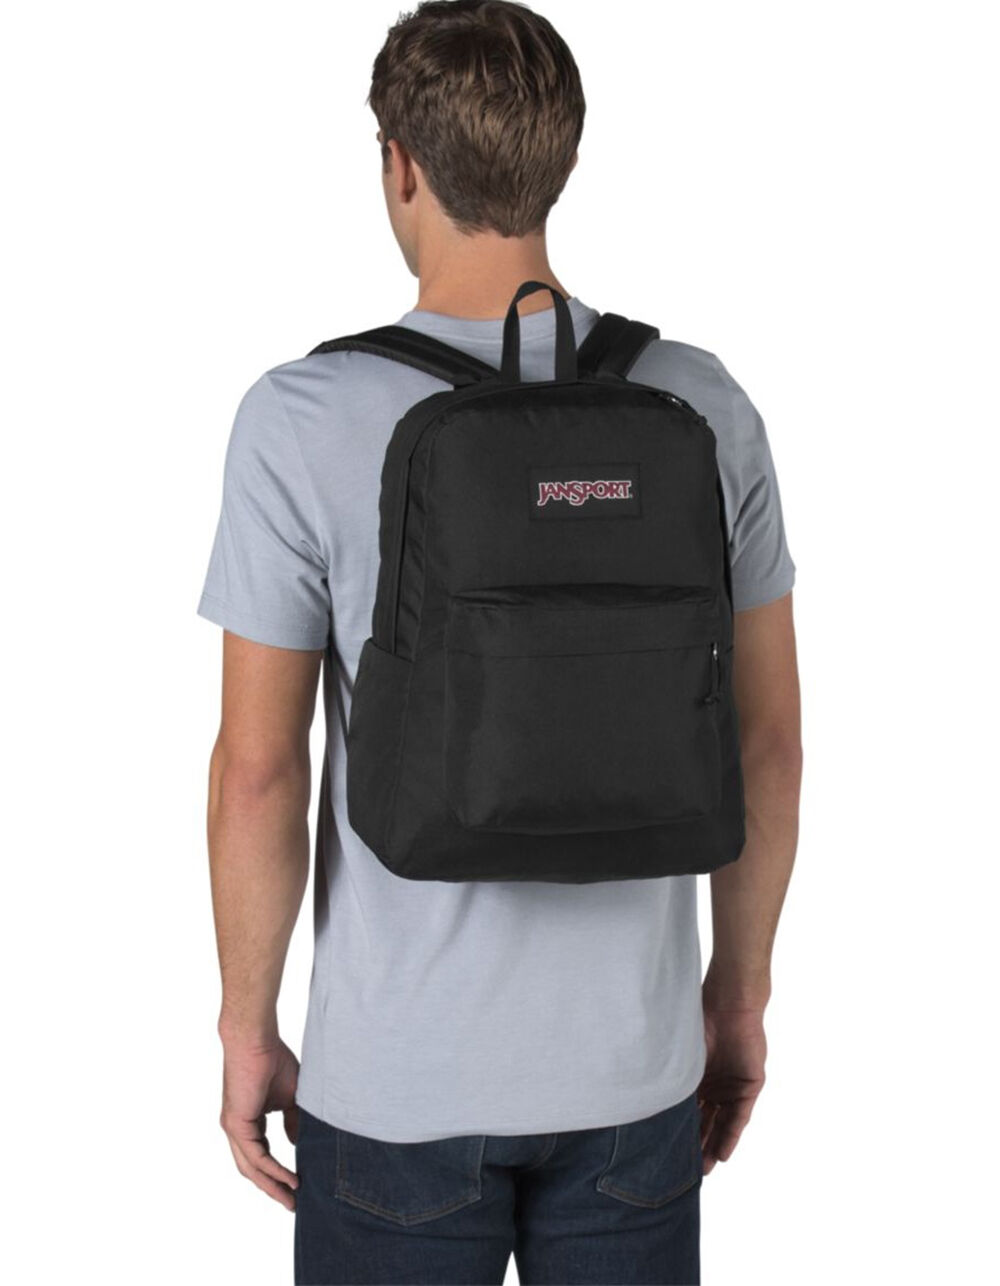 Jansport Big Student Backpack (Black/Black, One Size)